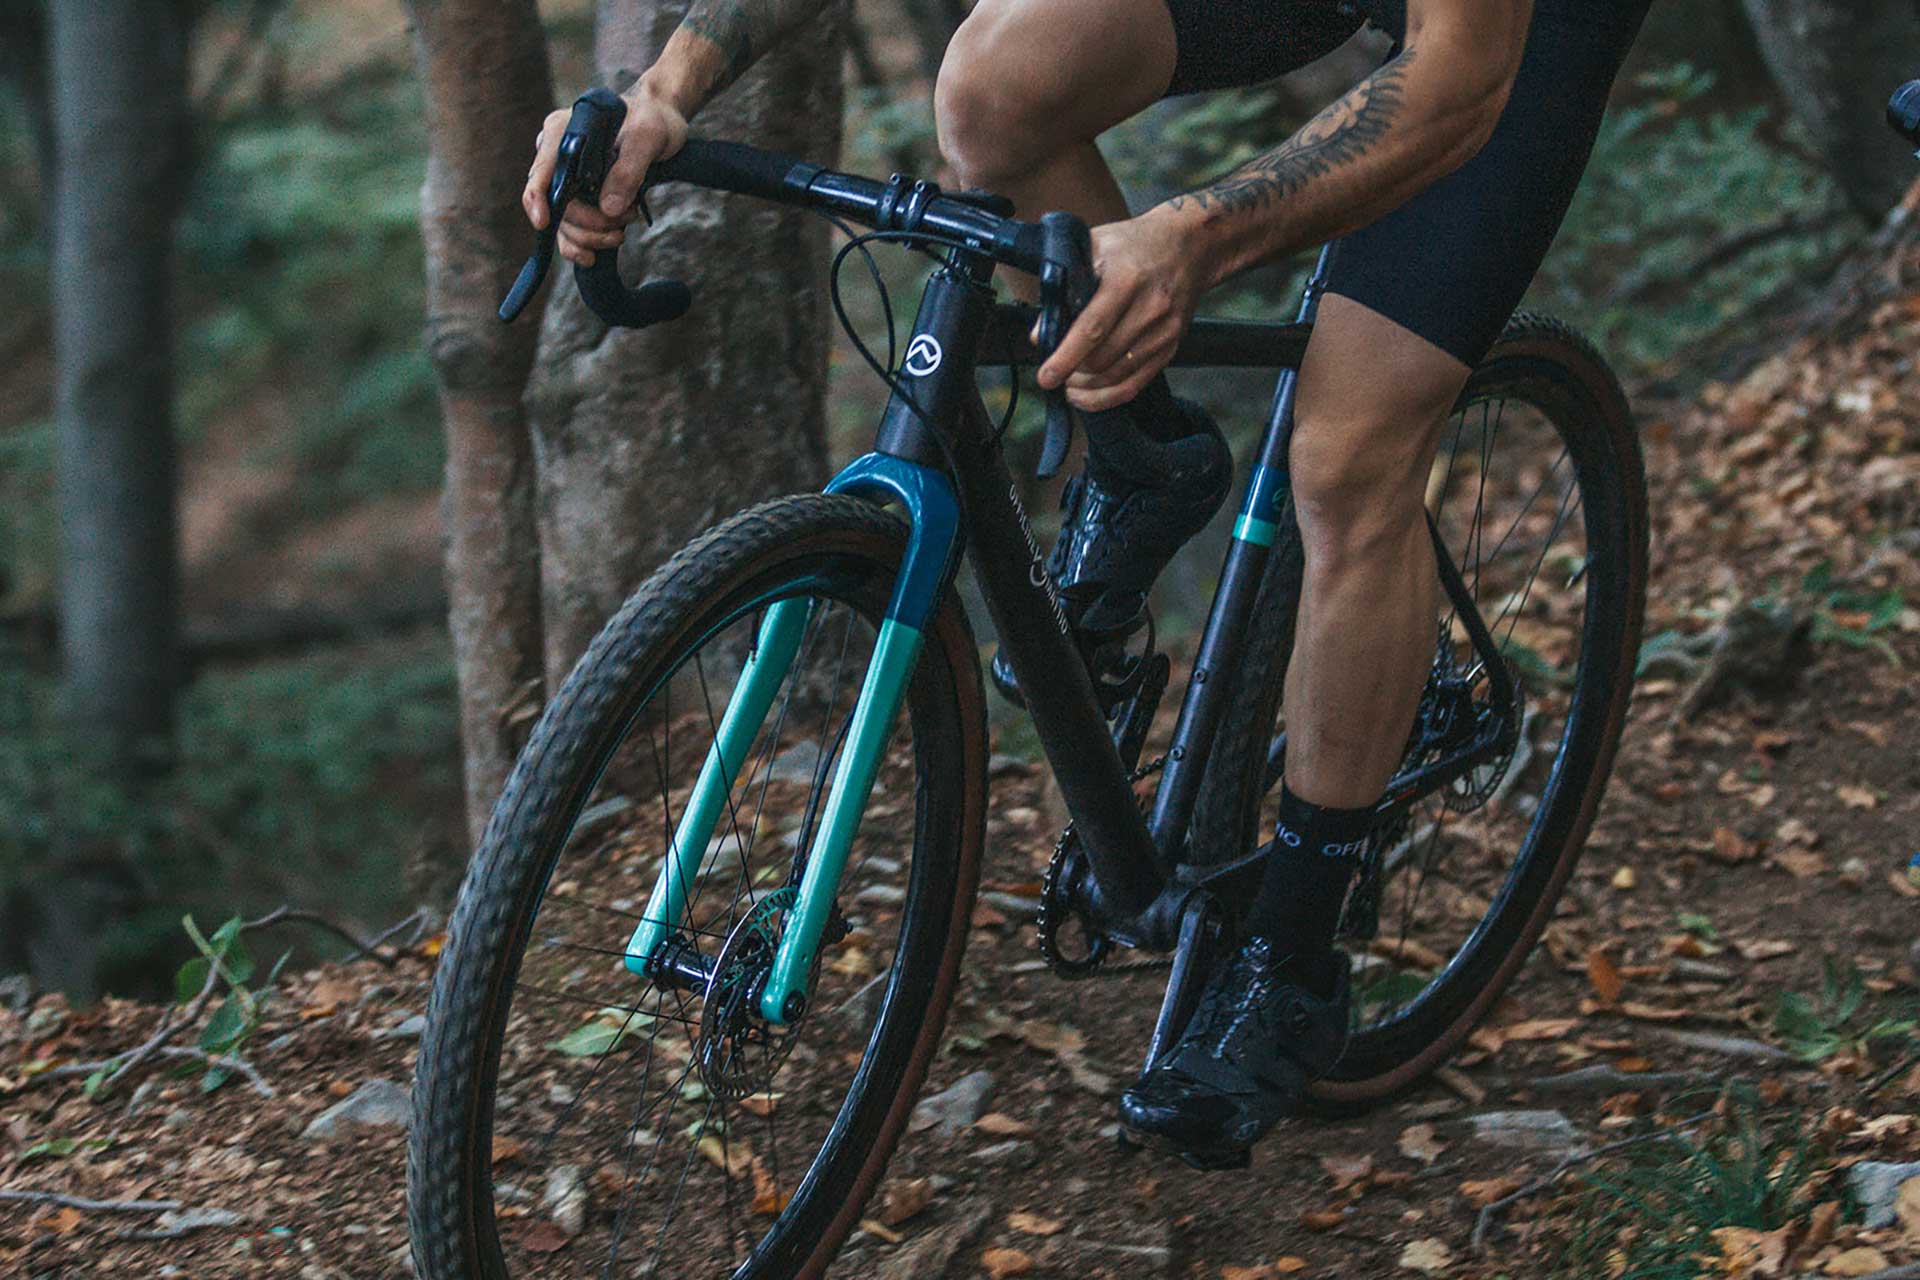 Bicicletta Officine Mattio modello SANTIAGO C colori nero, blu e azzurro, super leggera e maneggevole, in fibra di carbonio produzione made in italy ambientata 03